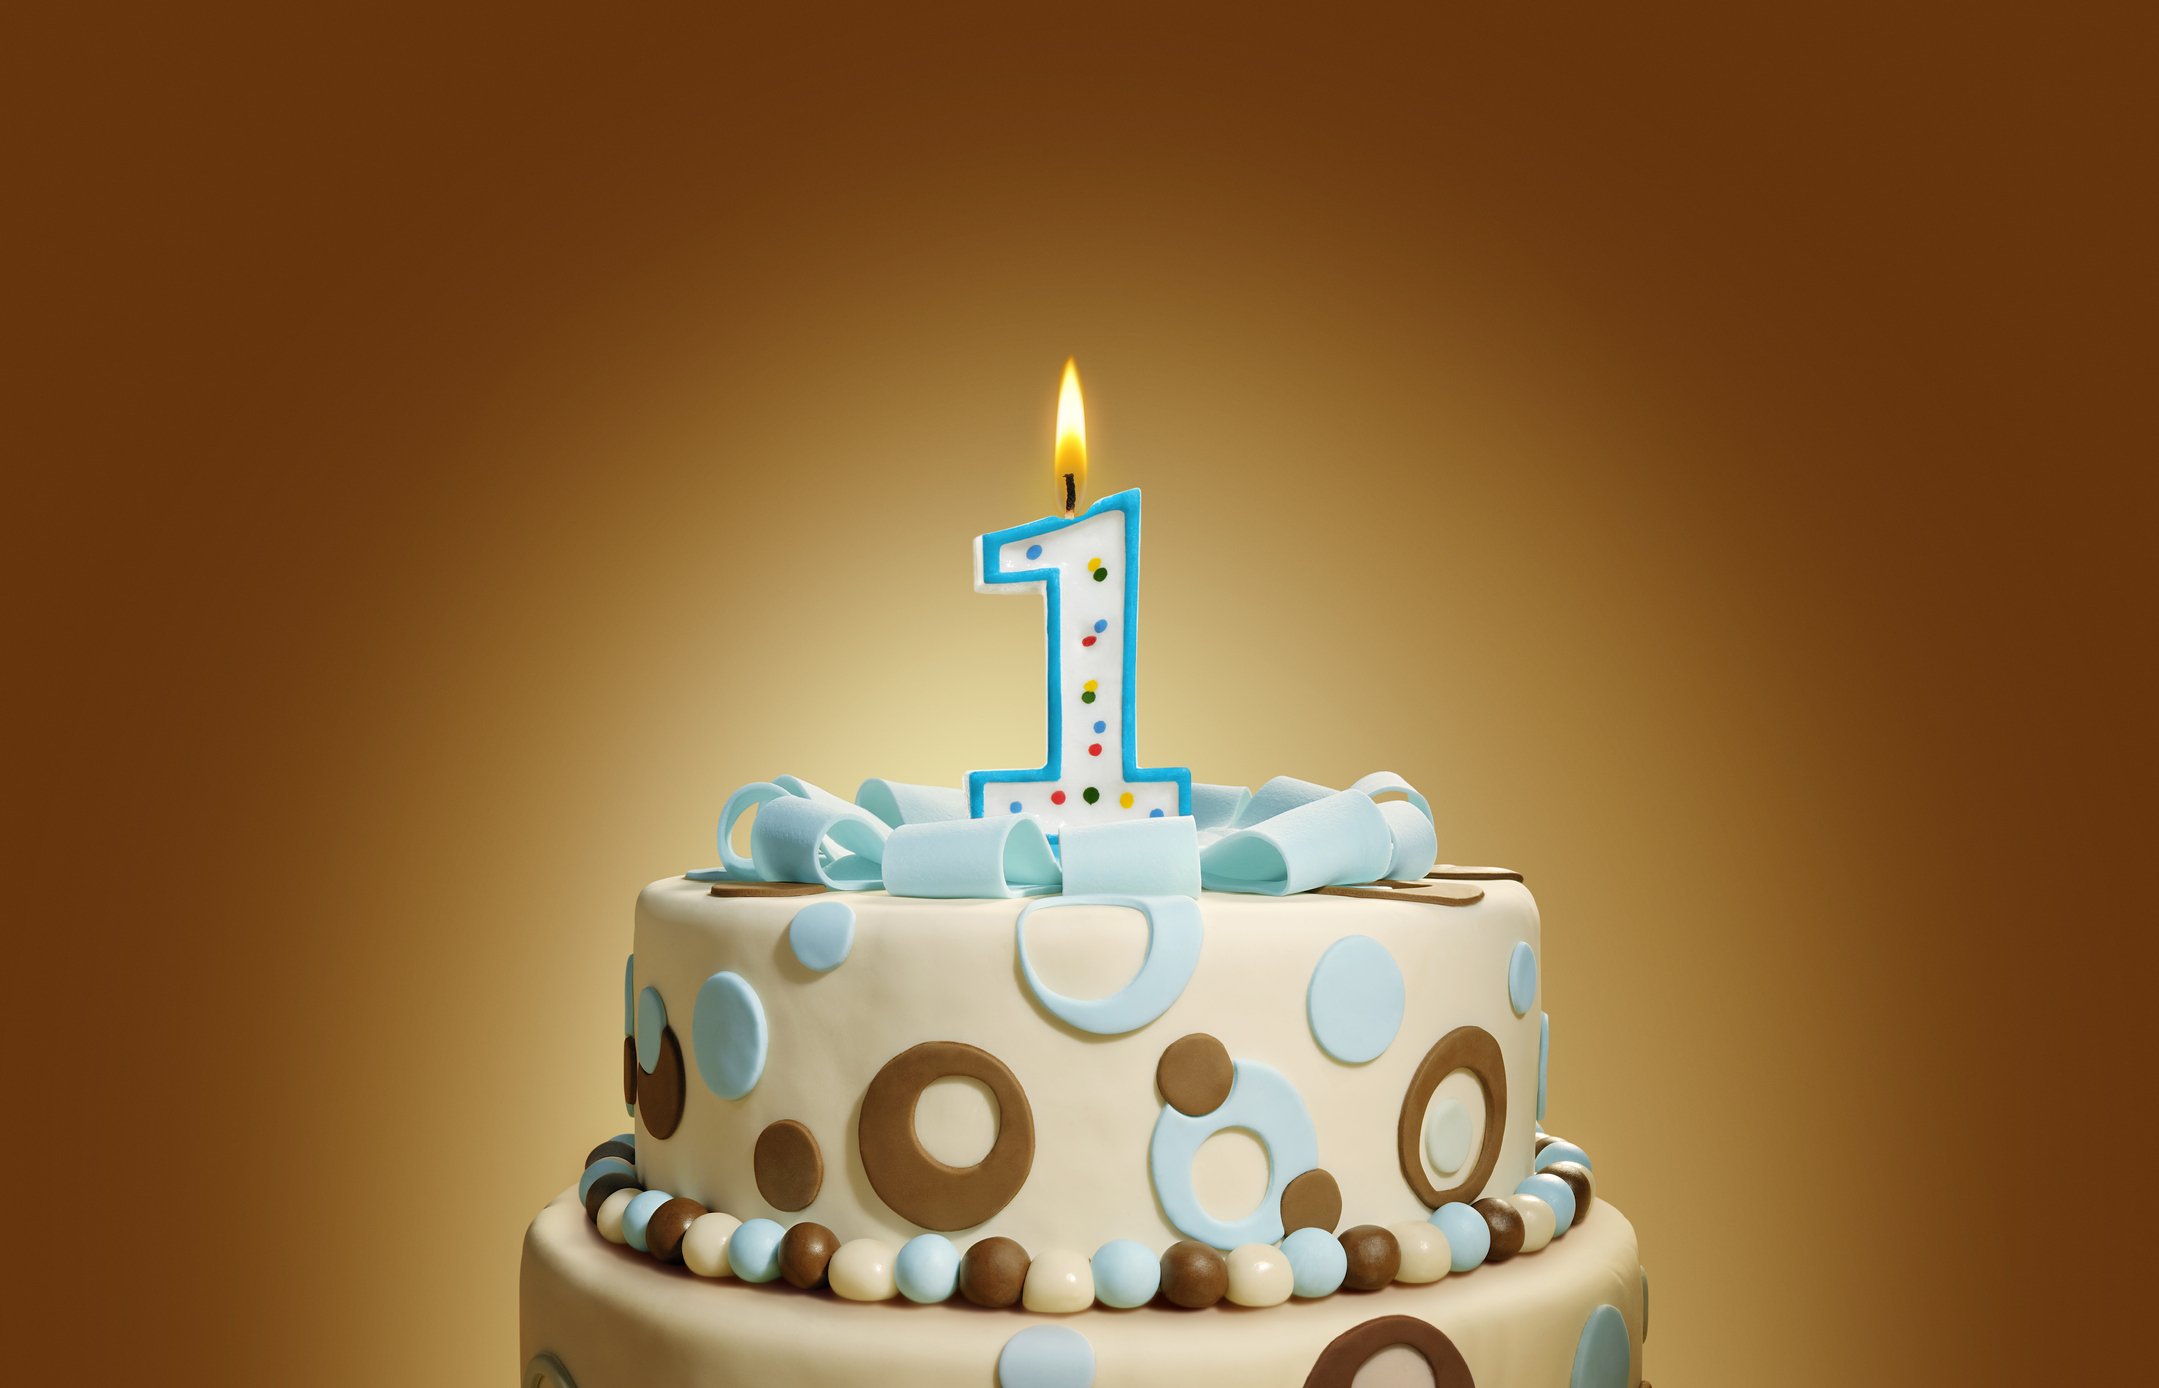 Фирме 1 год. Тортик и свечка 1 год. Торт с одной свечкой. Торт с 1 свечкой. С днем рождения 1 год.